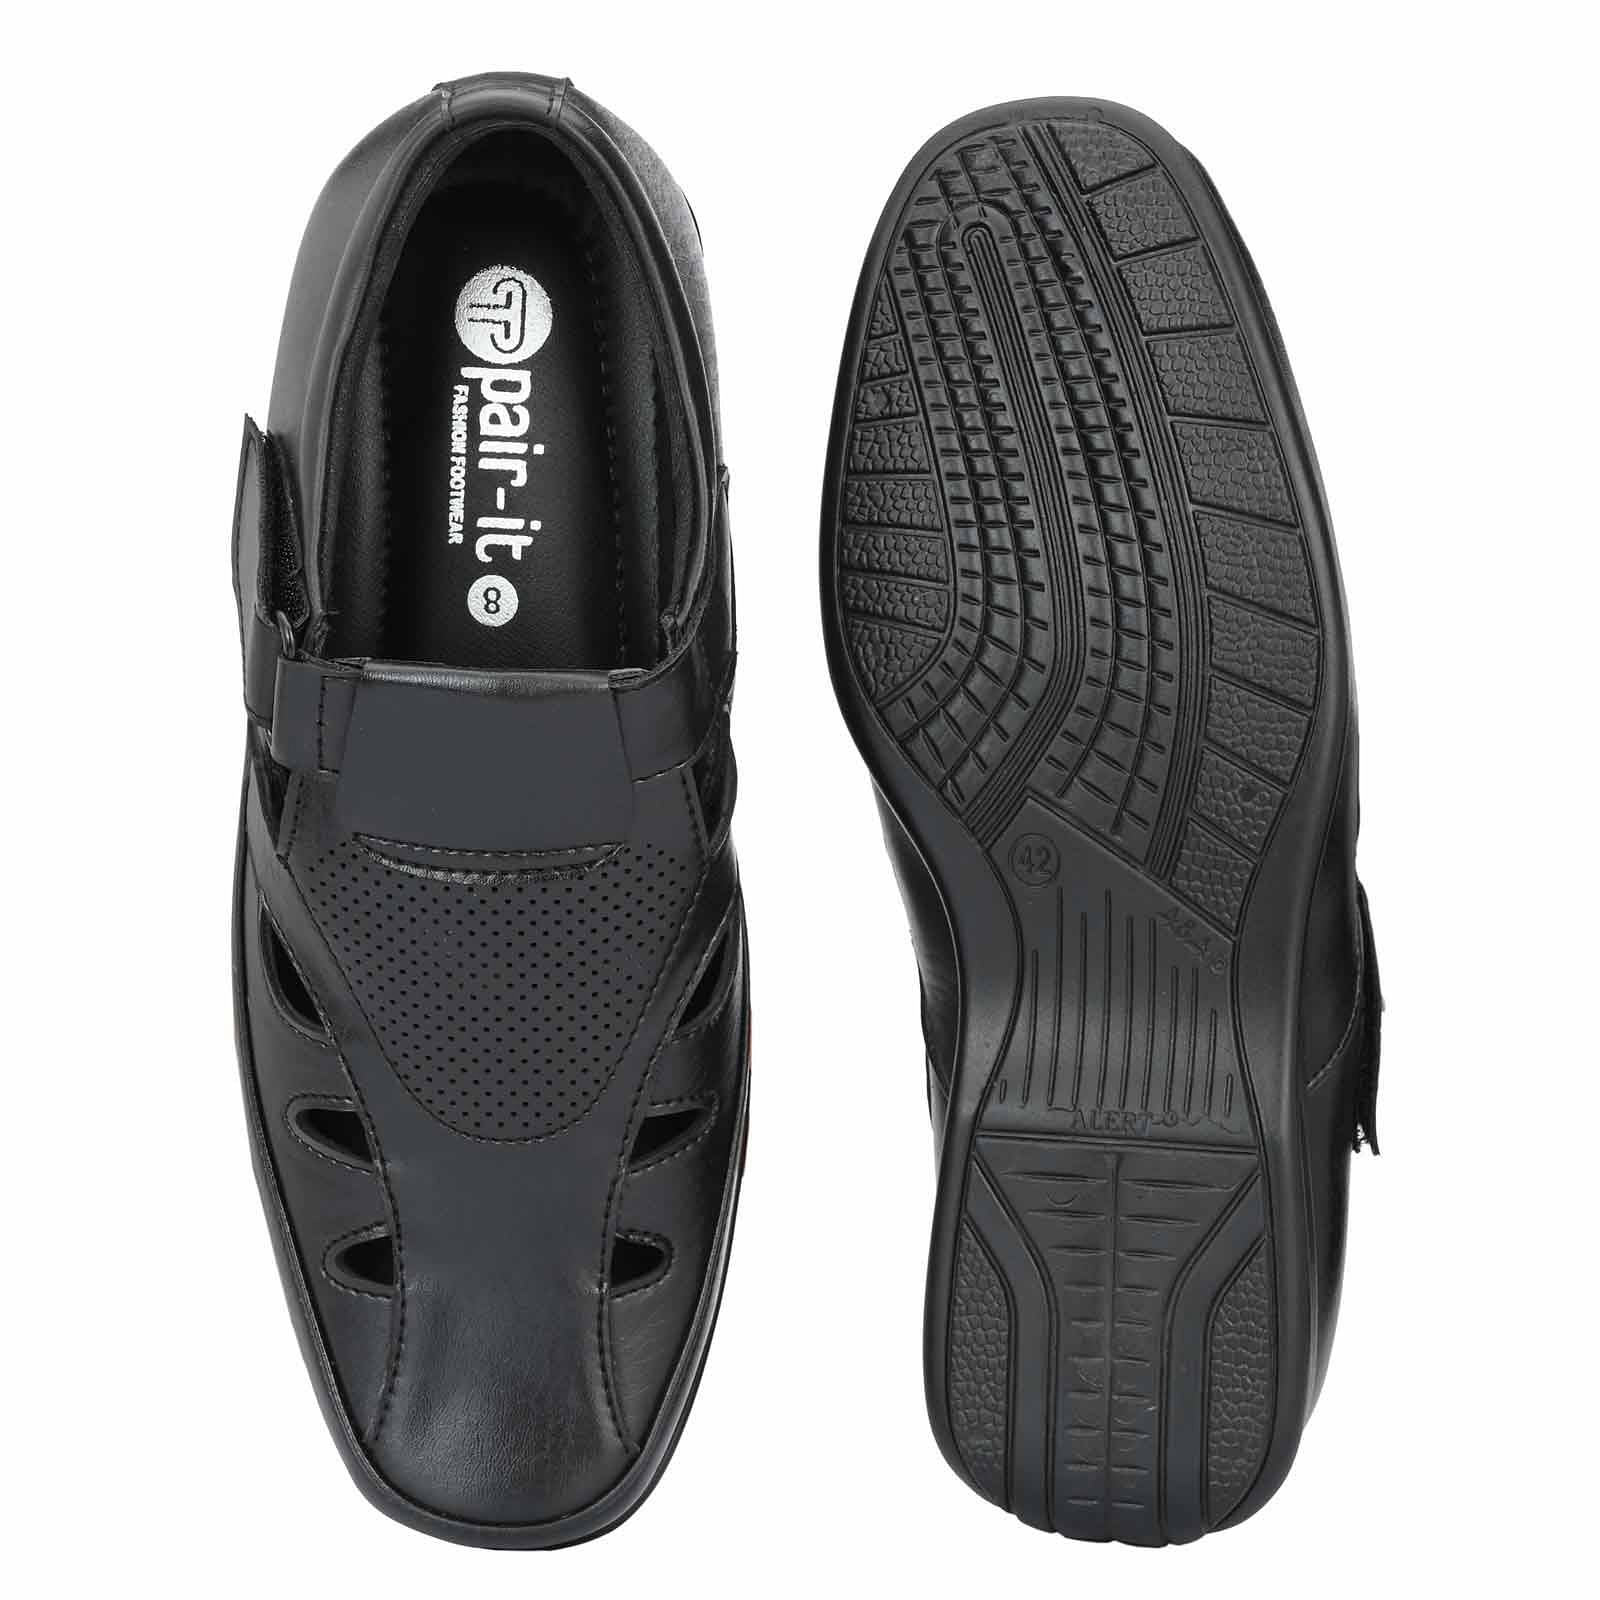 Pair-it Mn Sandals - Black-LZ-Roman-101